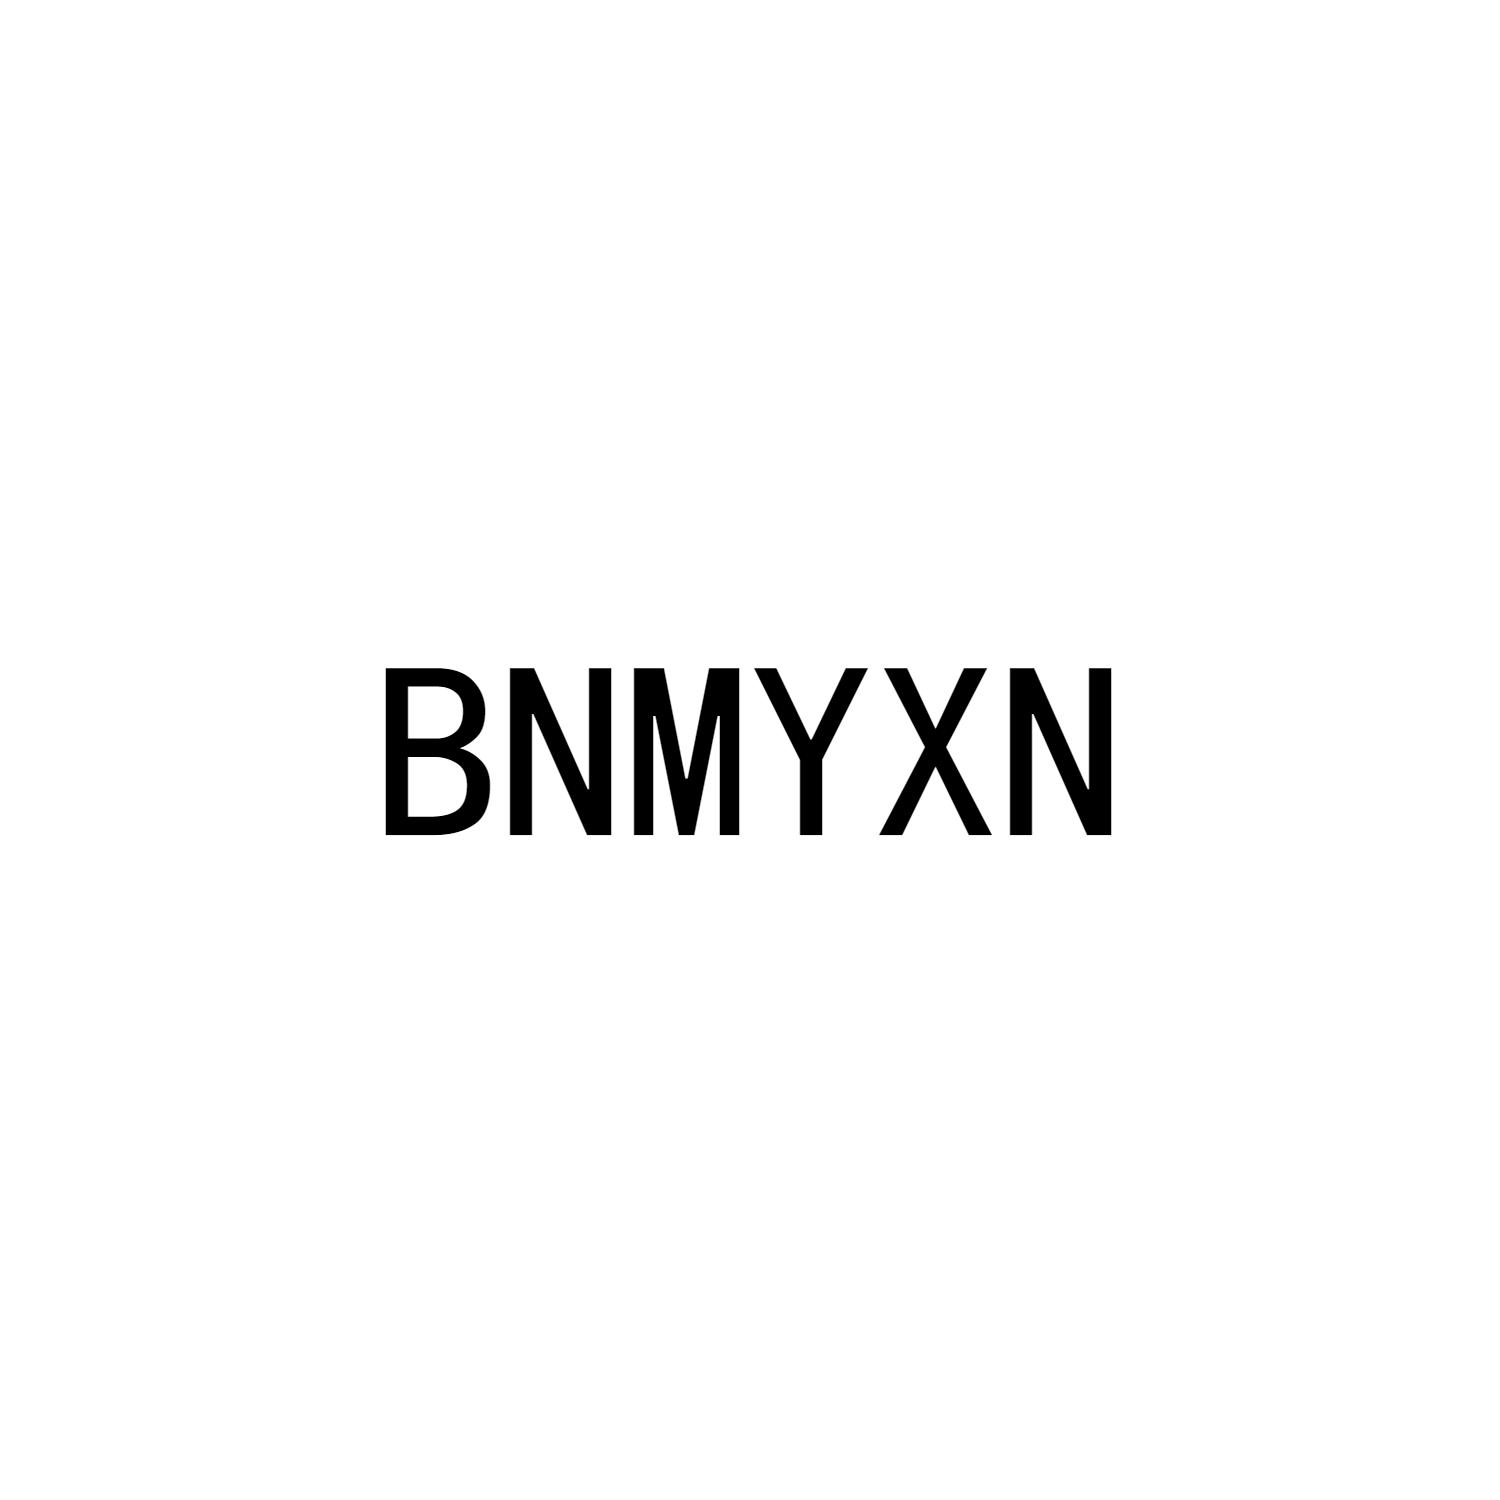 BNMYXN